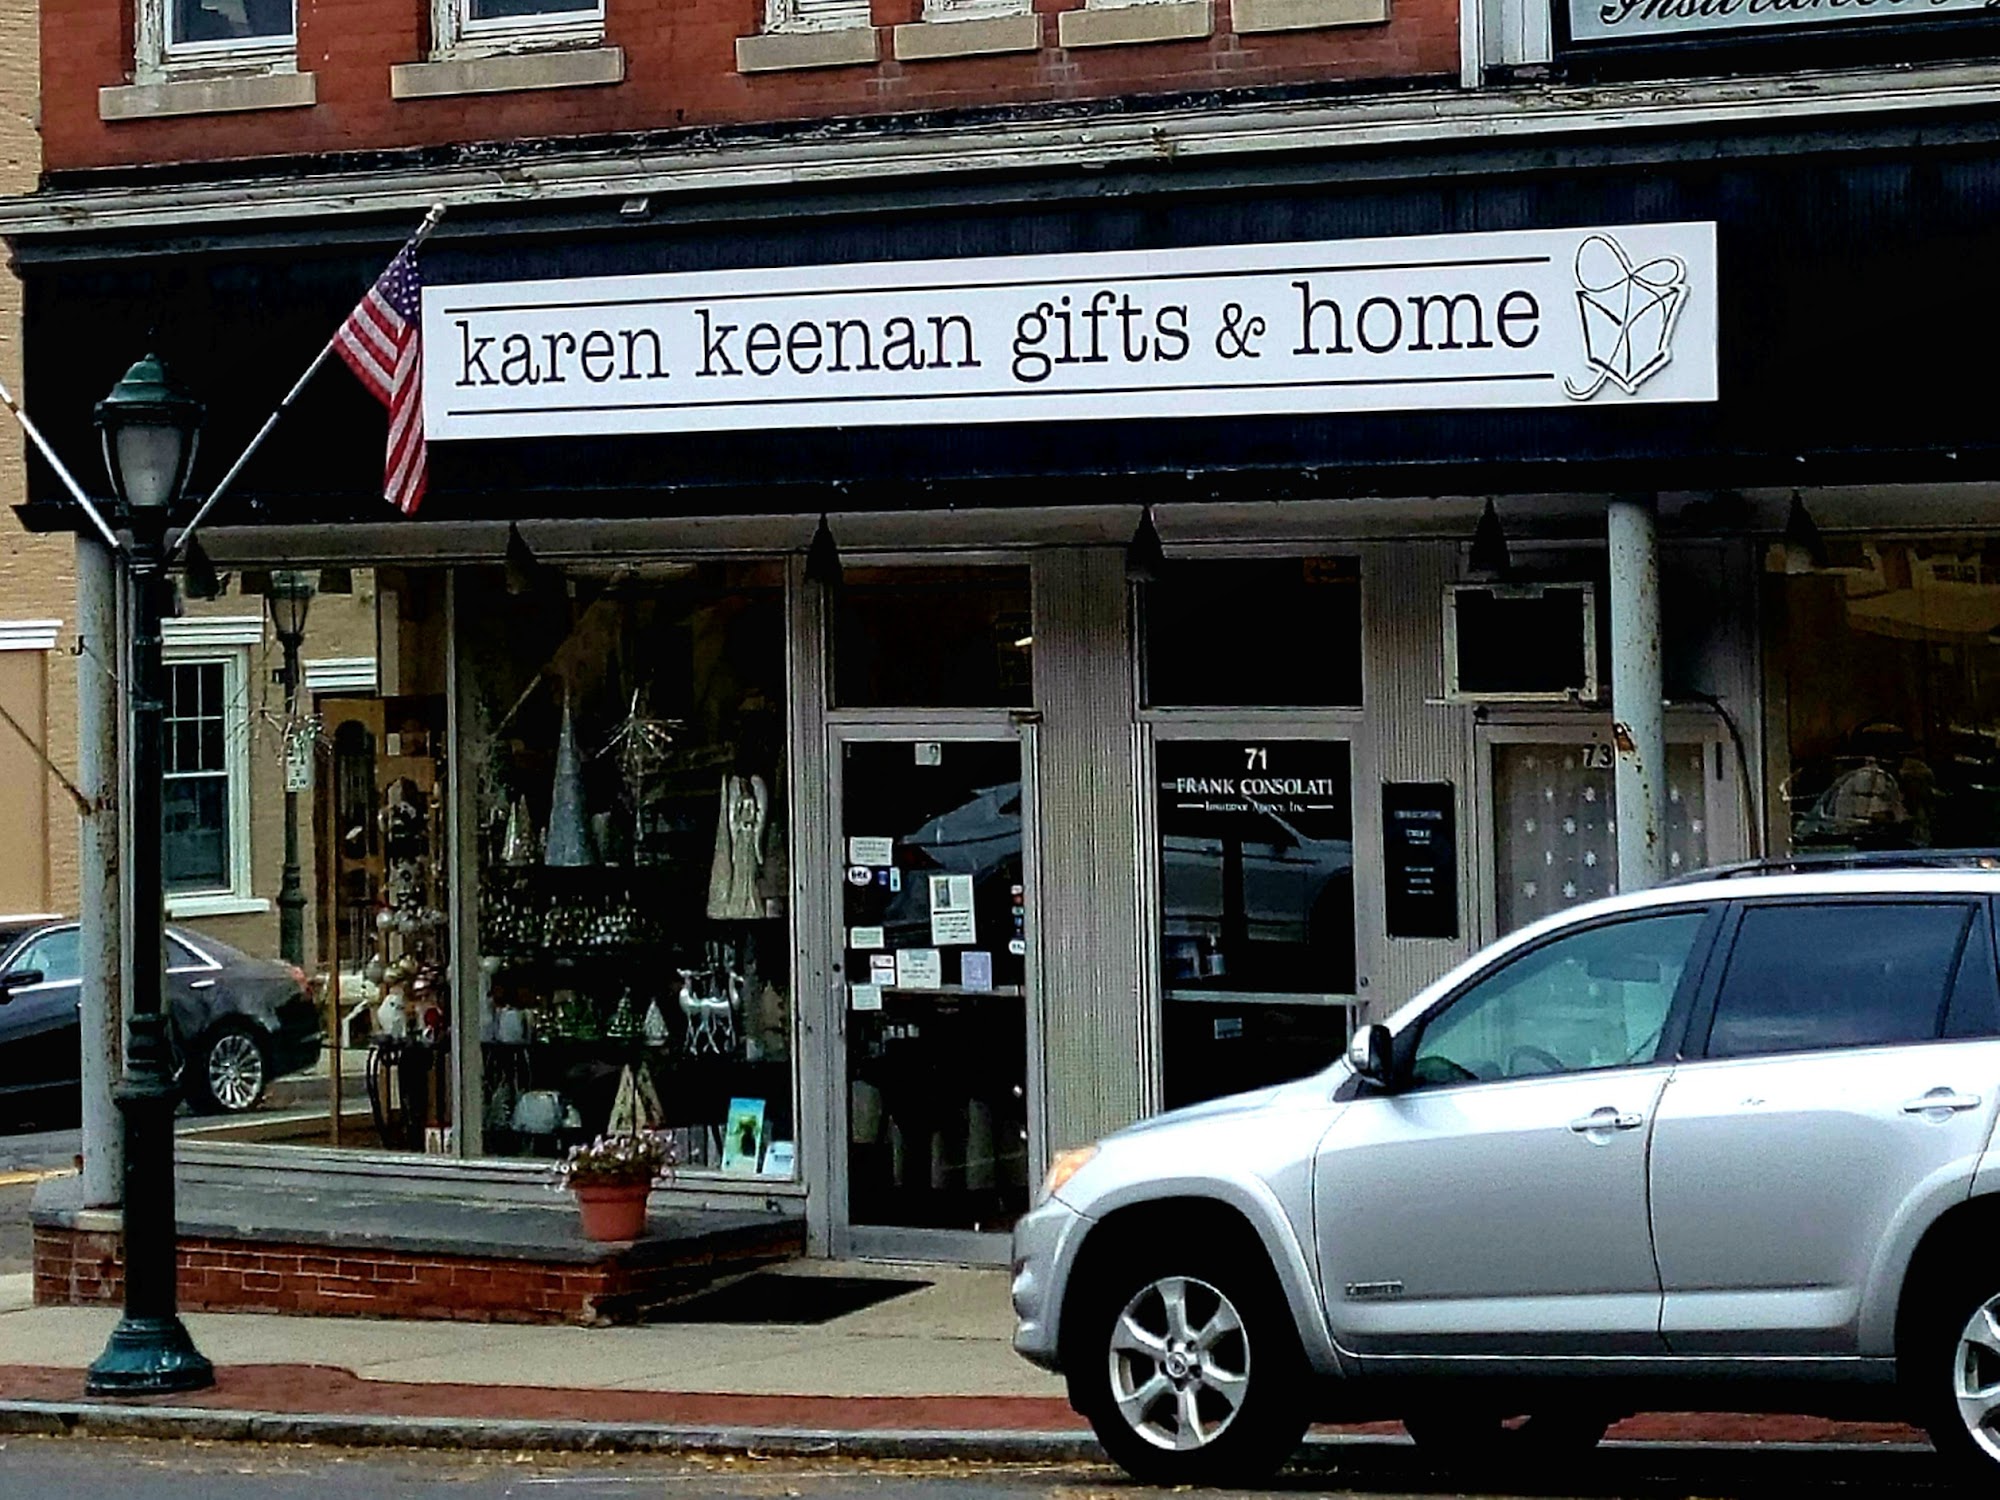 Karen Keenan gifts & home